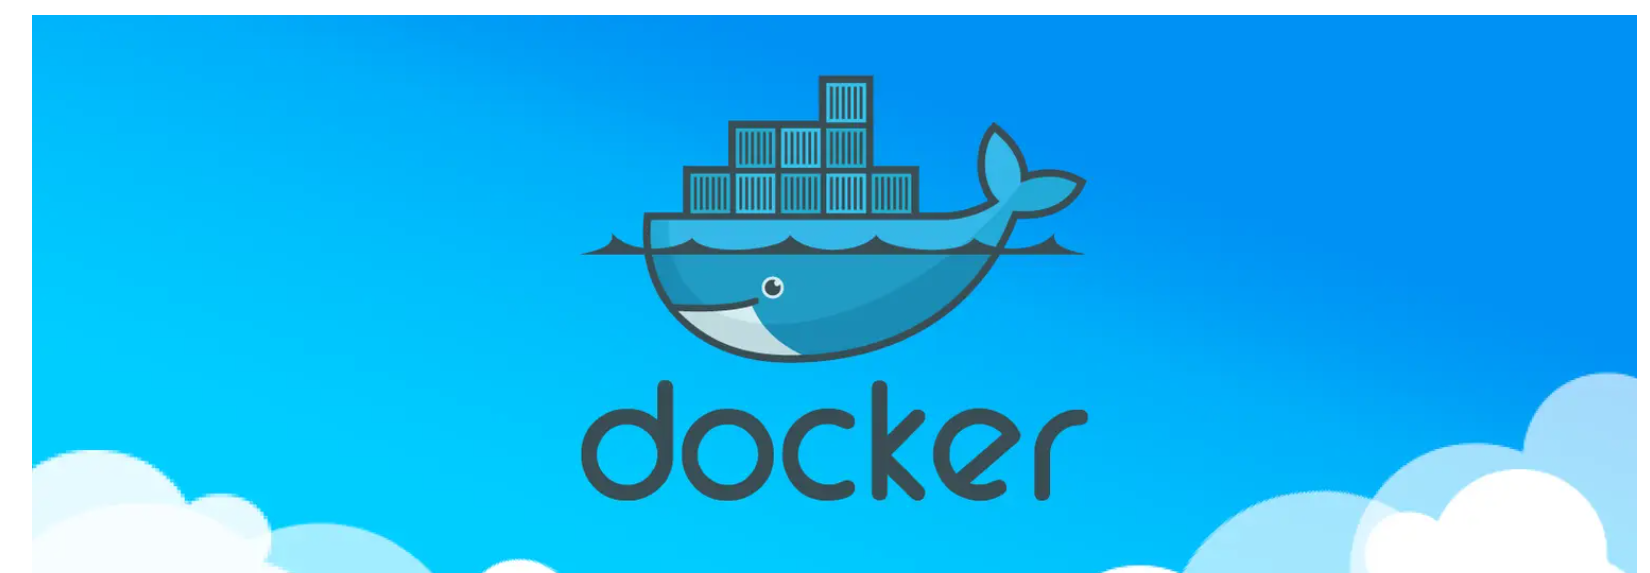 Docker系列 镜像